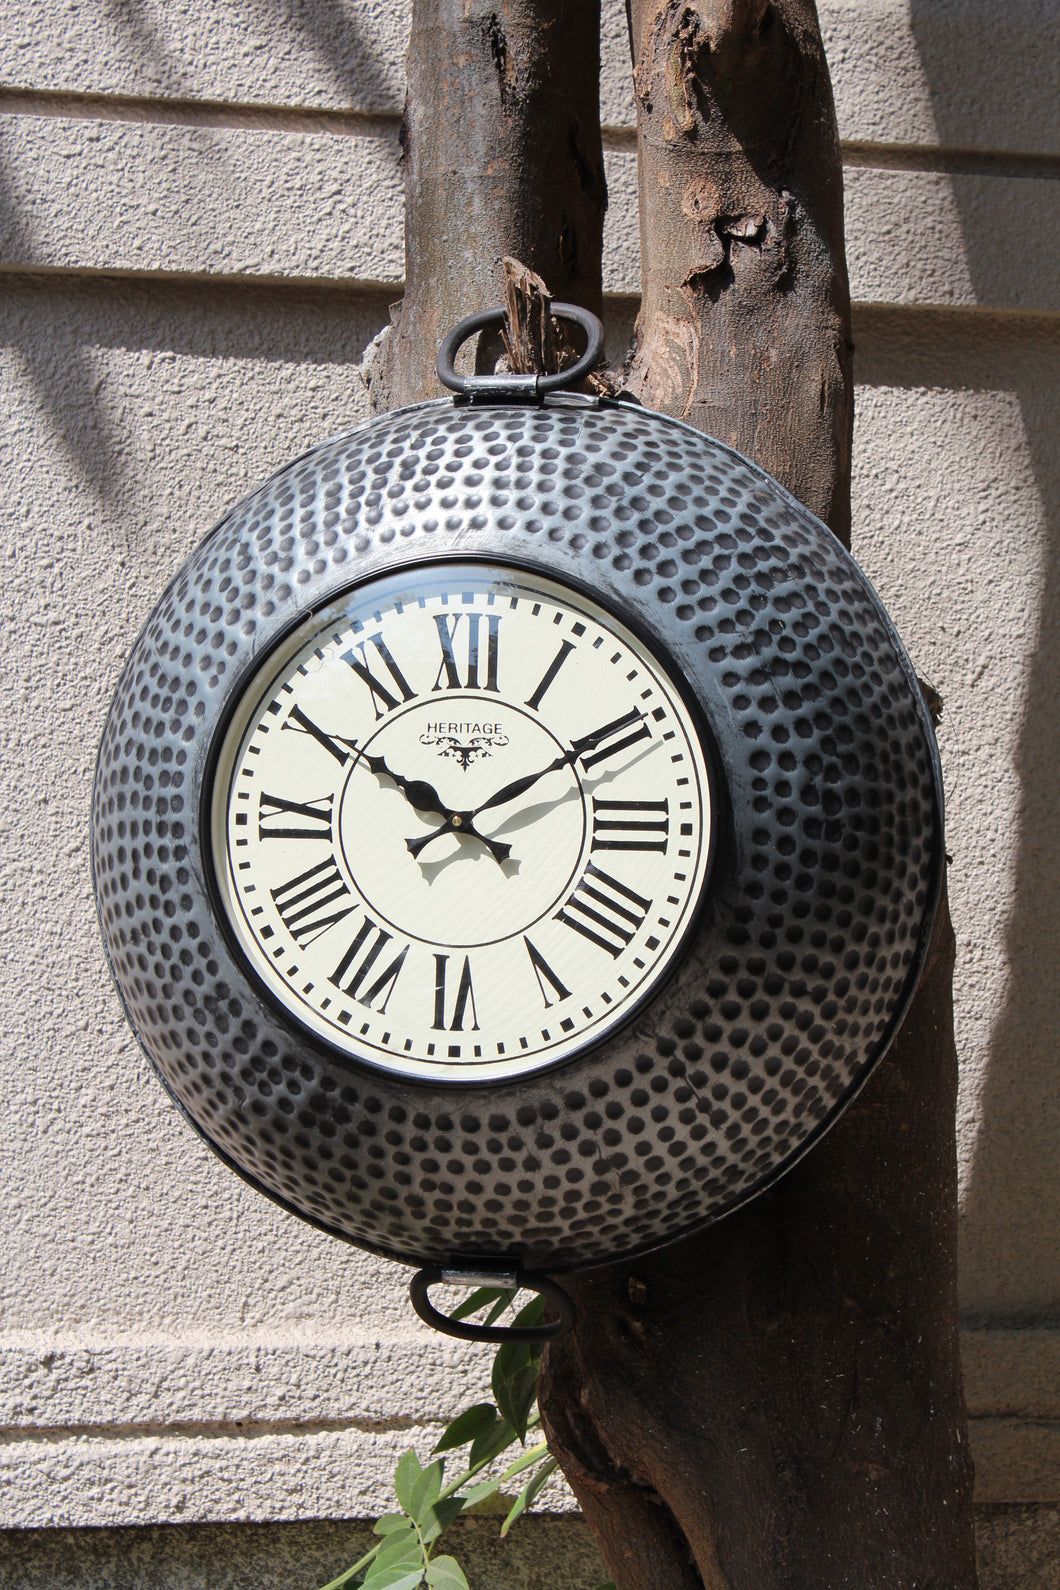 Metal Kadai Clock with Hammered Design